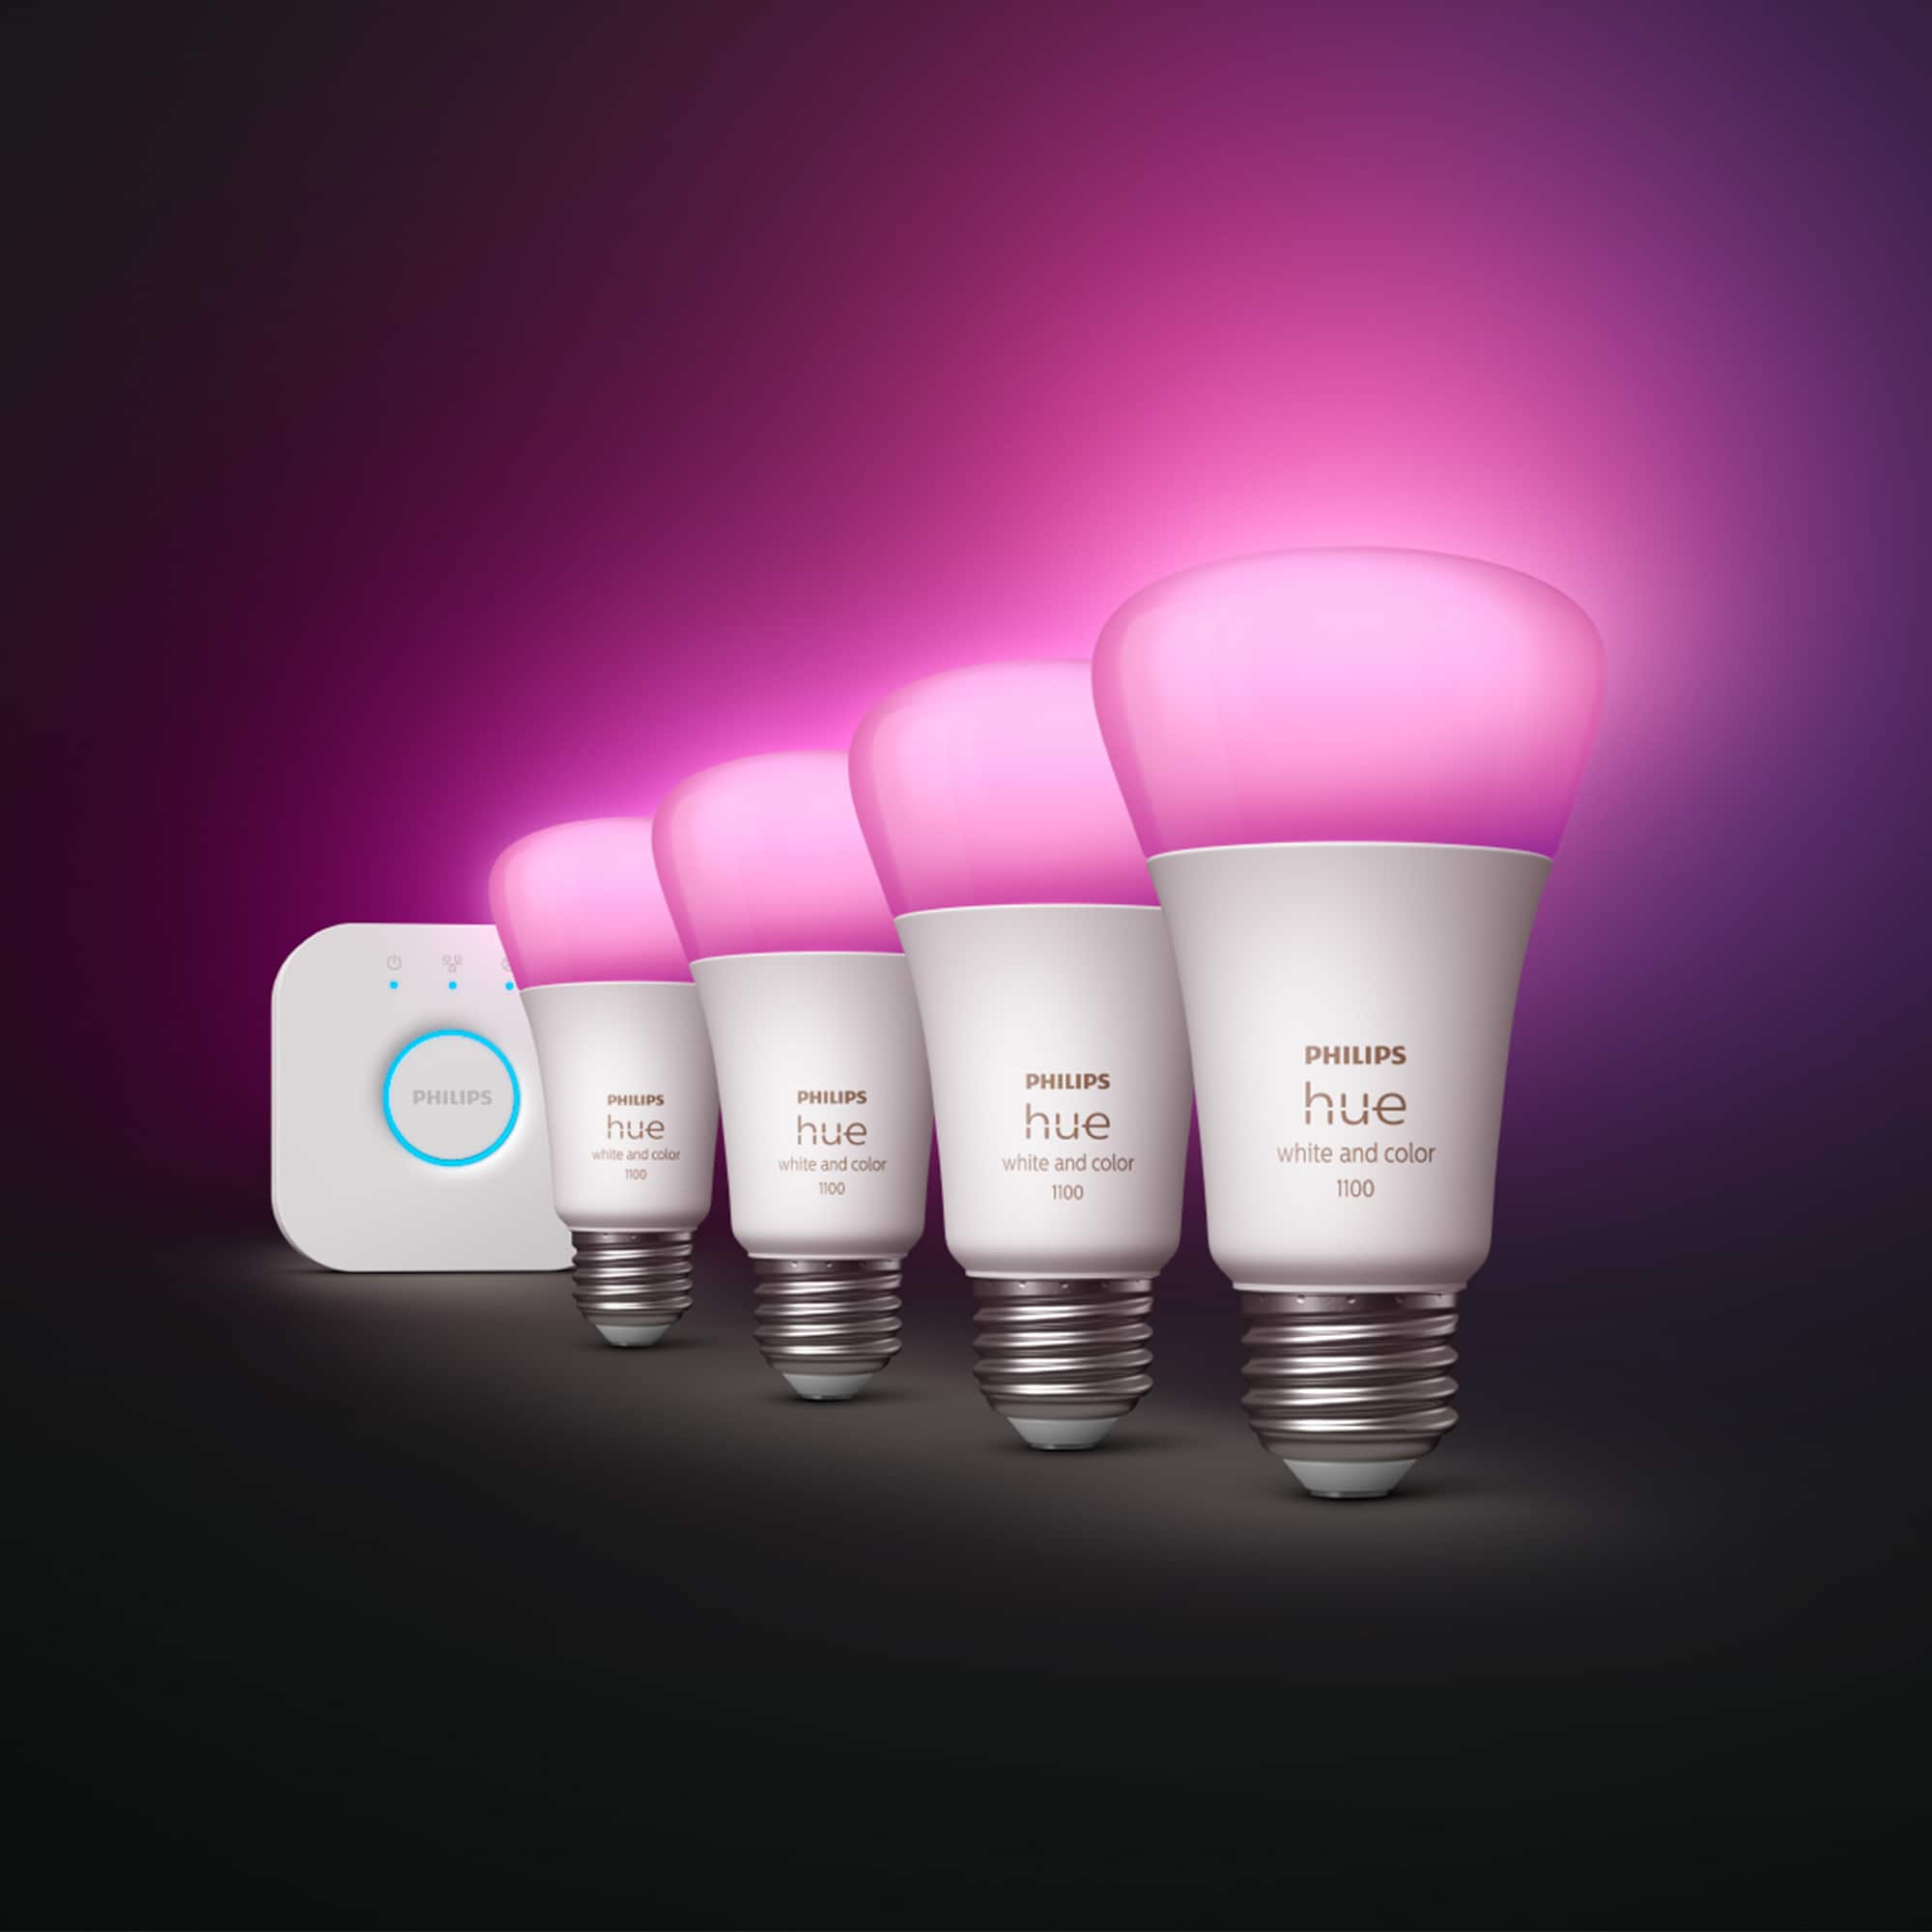 Philips Hue Starter Kit 75-Watt EQ A19 Full Color Dimmable Smart LED Light  Bulb (4-Pack)